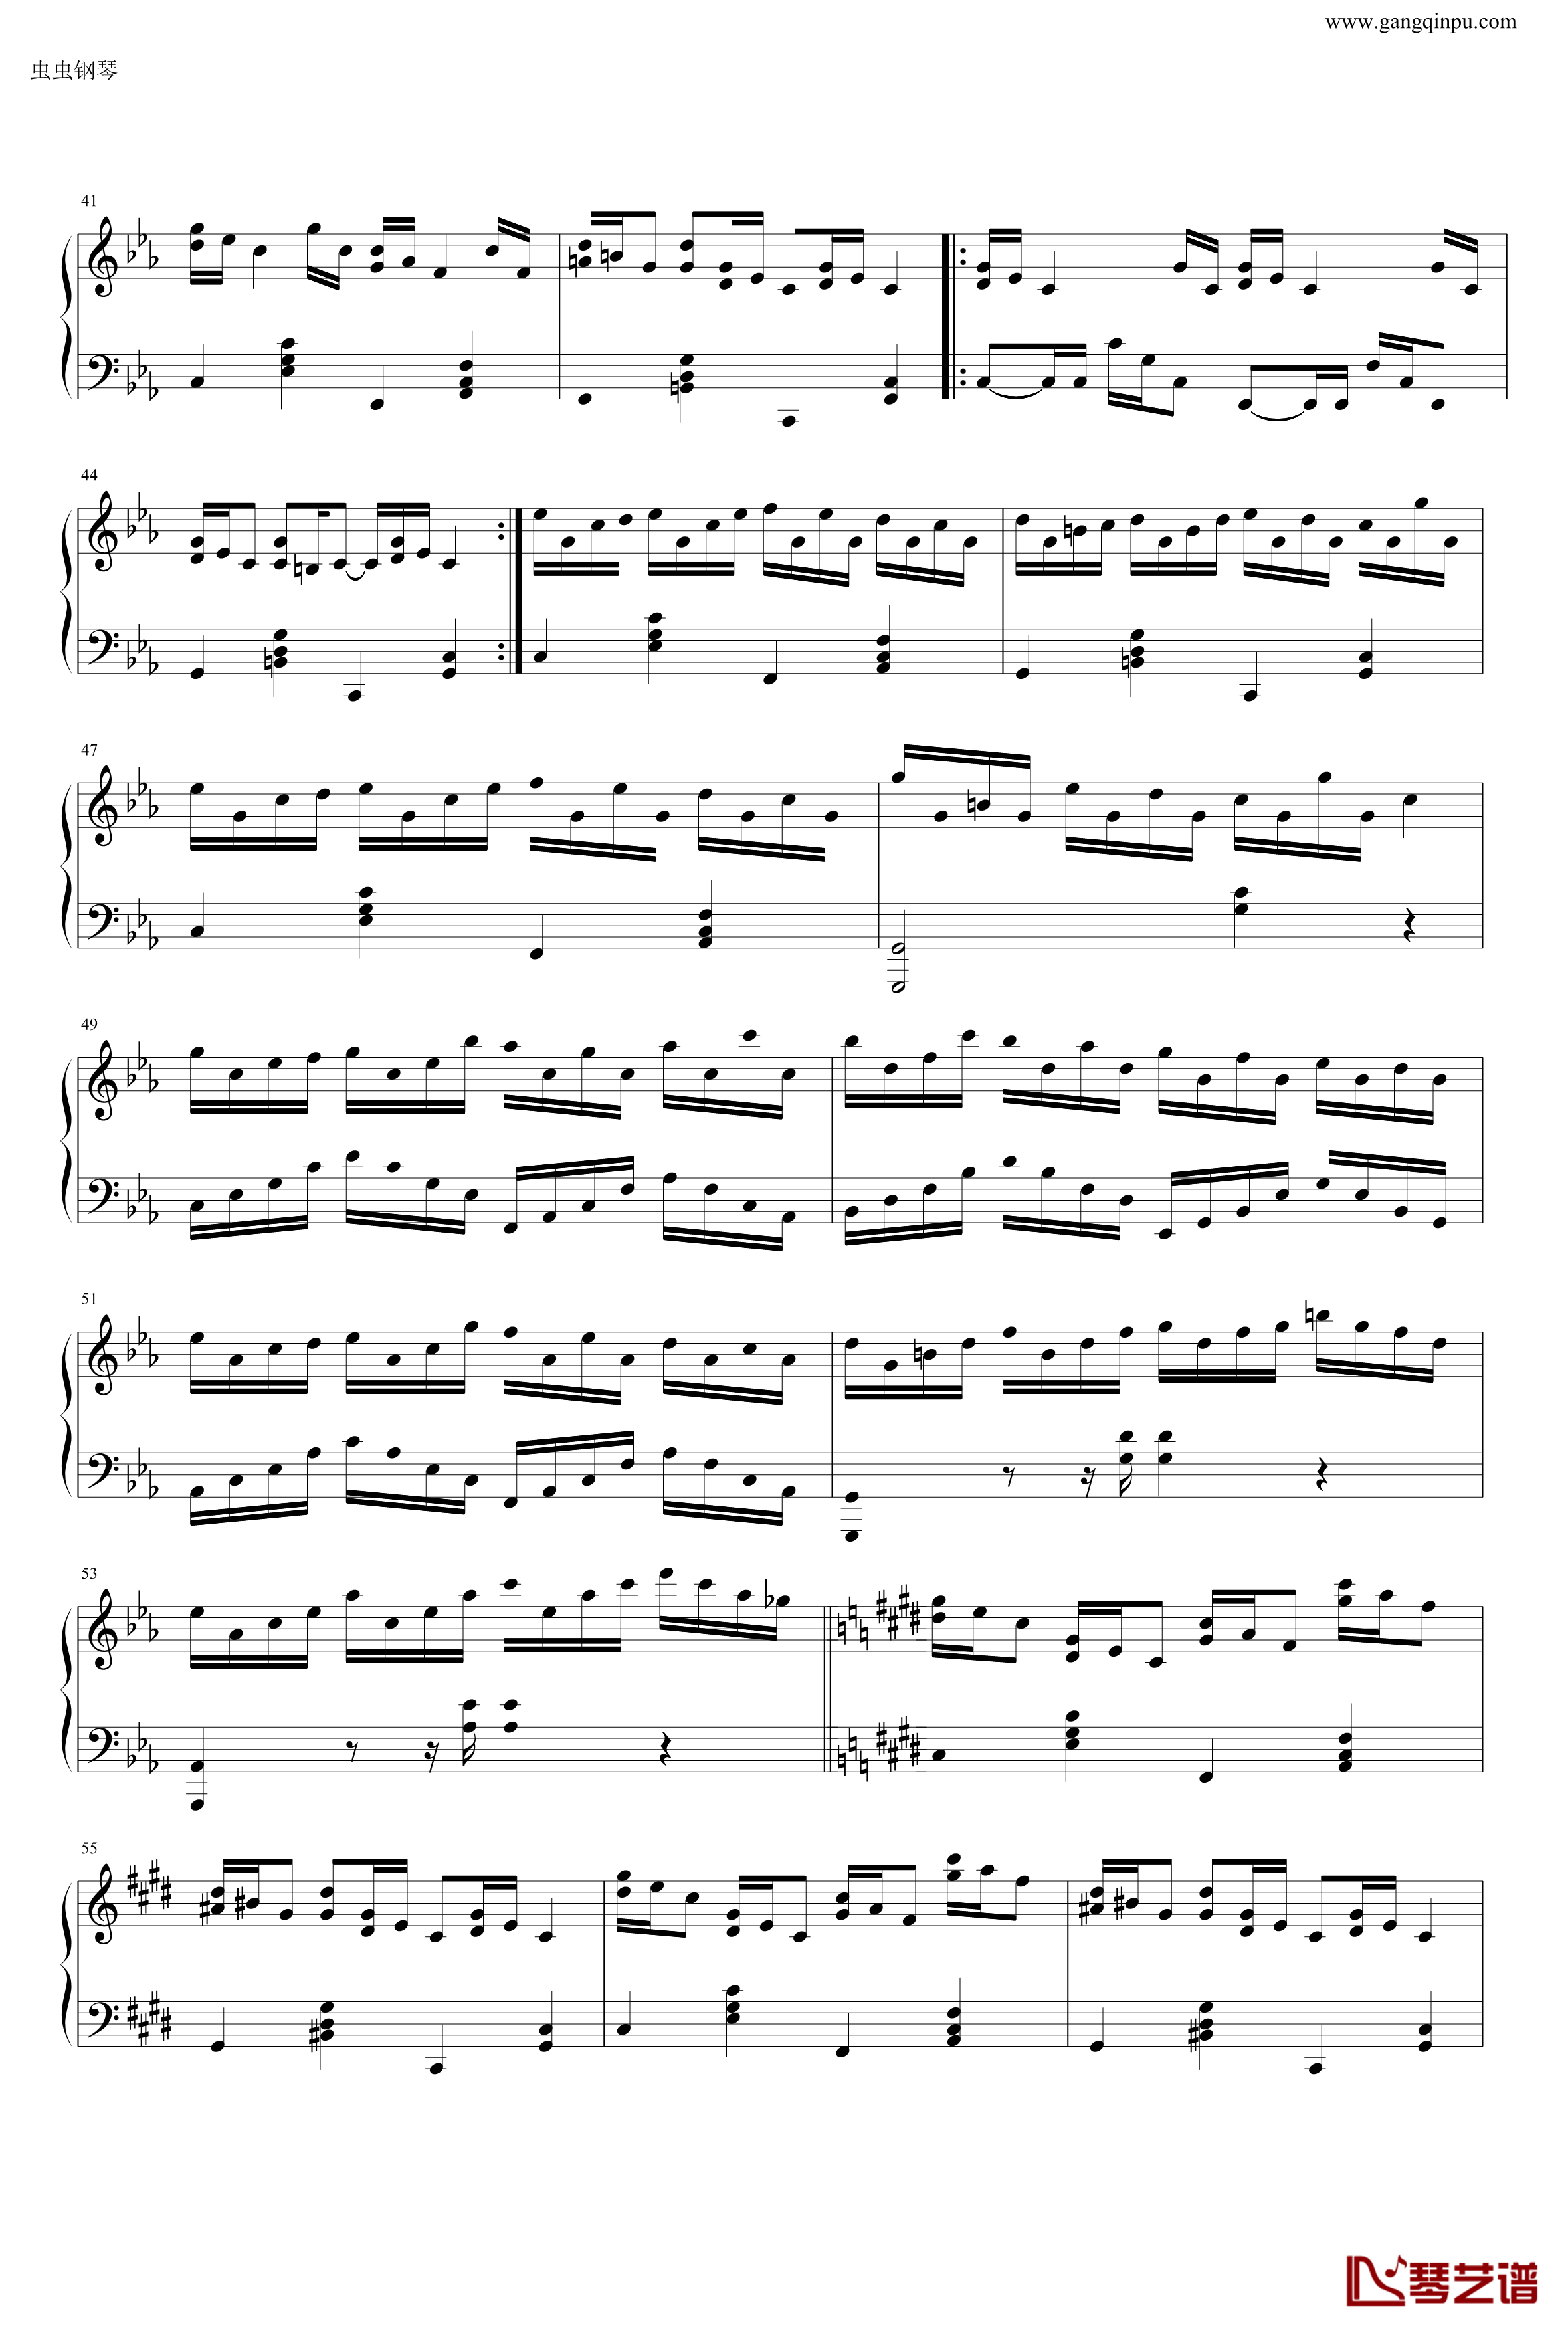 克罗地亚狂想曲钢琴谱-做了优化的纯正版-马克西姆-Maksim·Mrvica3